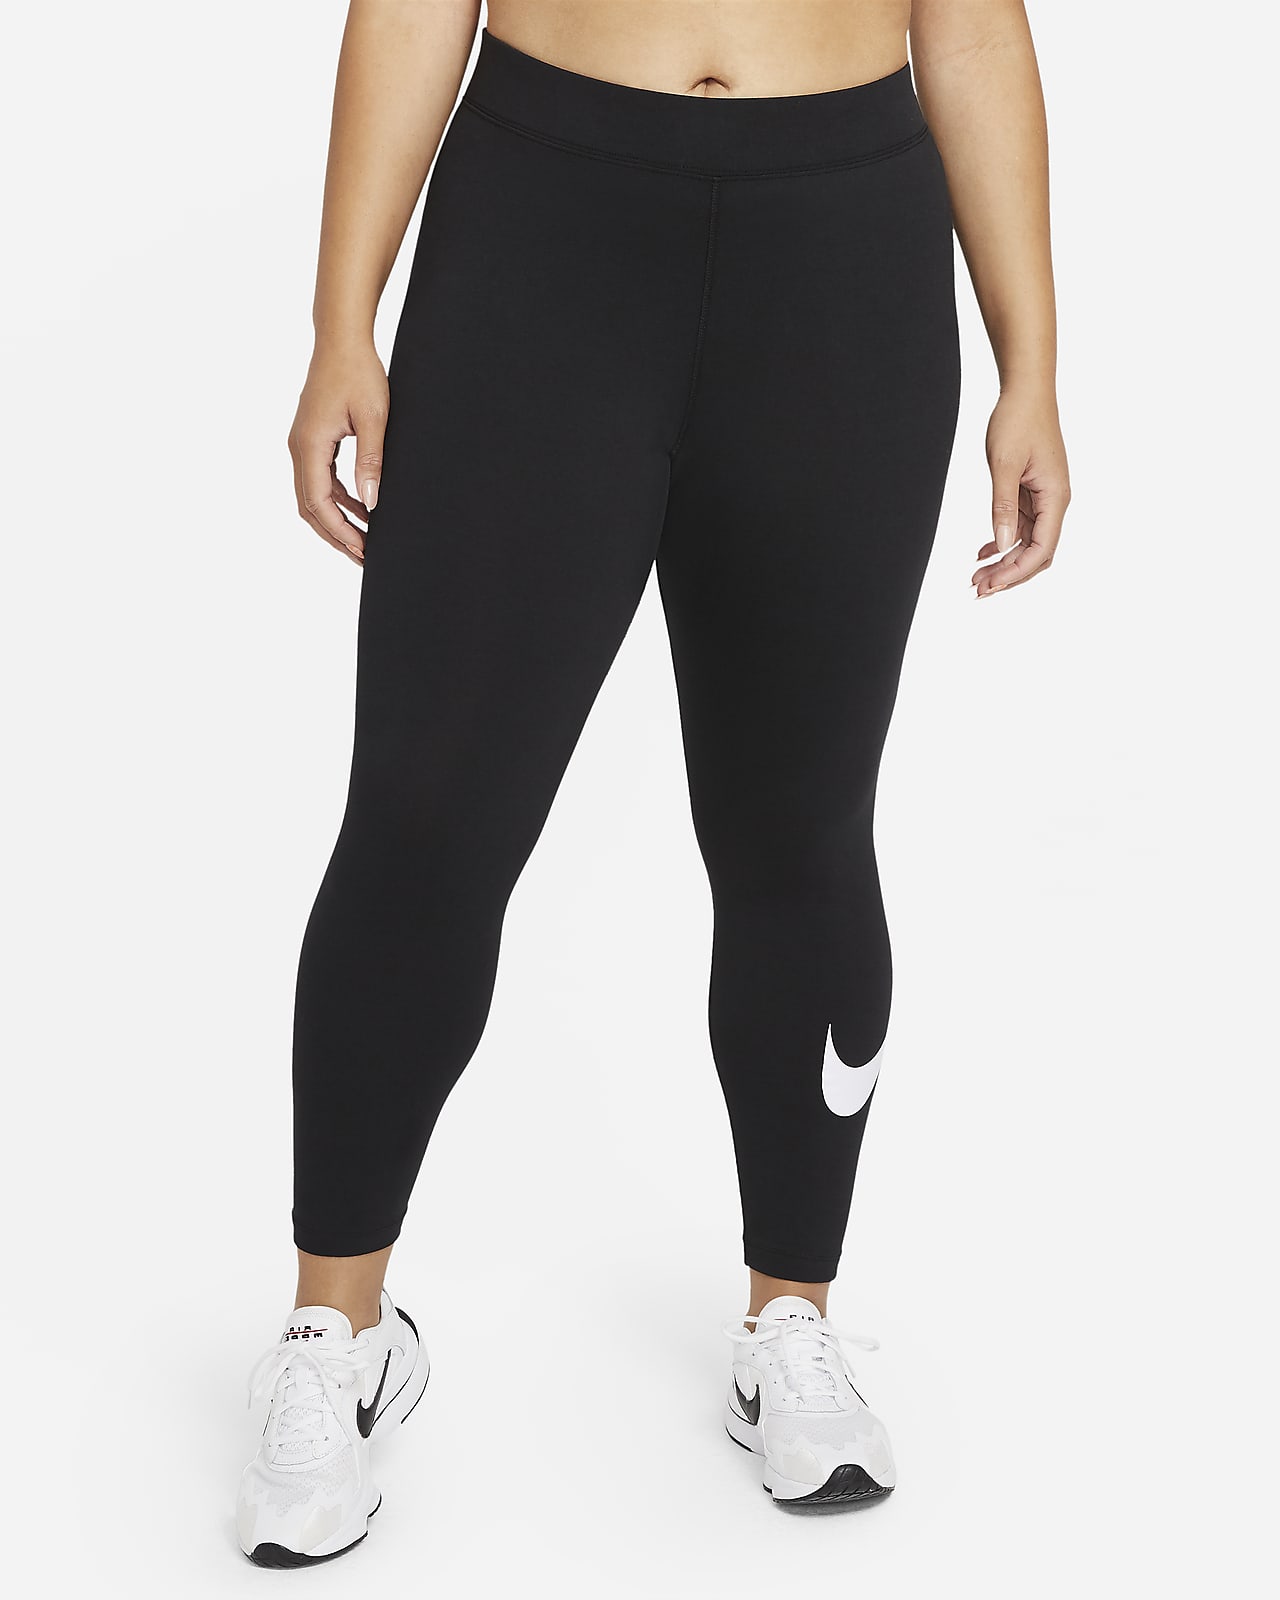 Nike Sportswear Essential Damen-Leggings mit halbhohem Bund und Swoosh (große Größe)